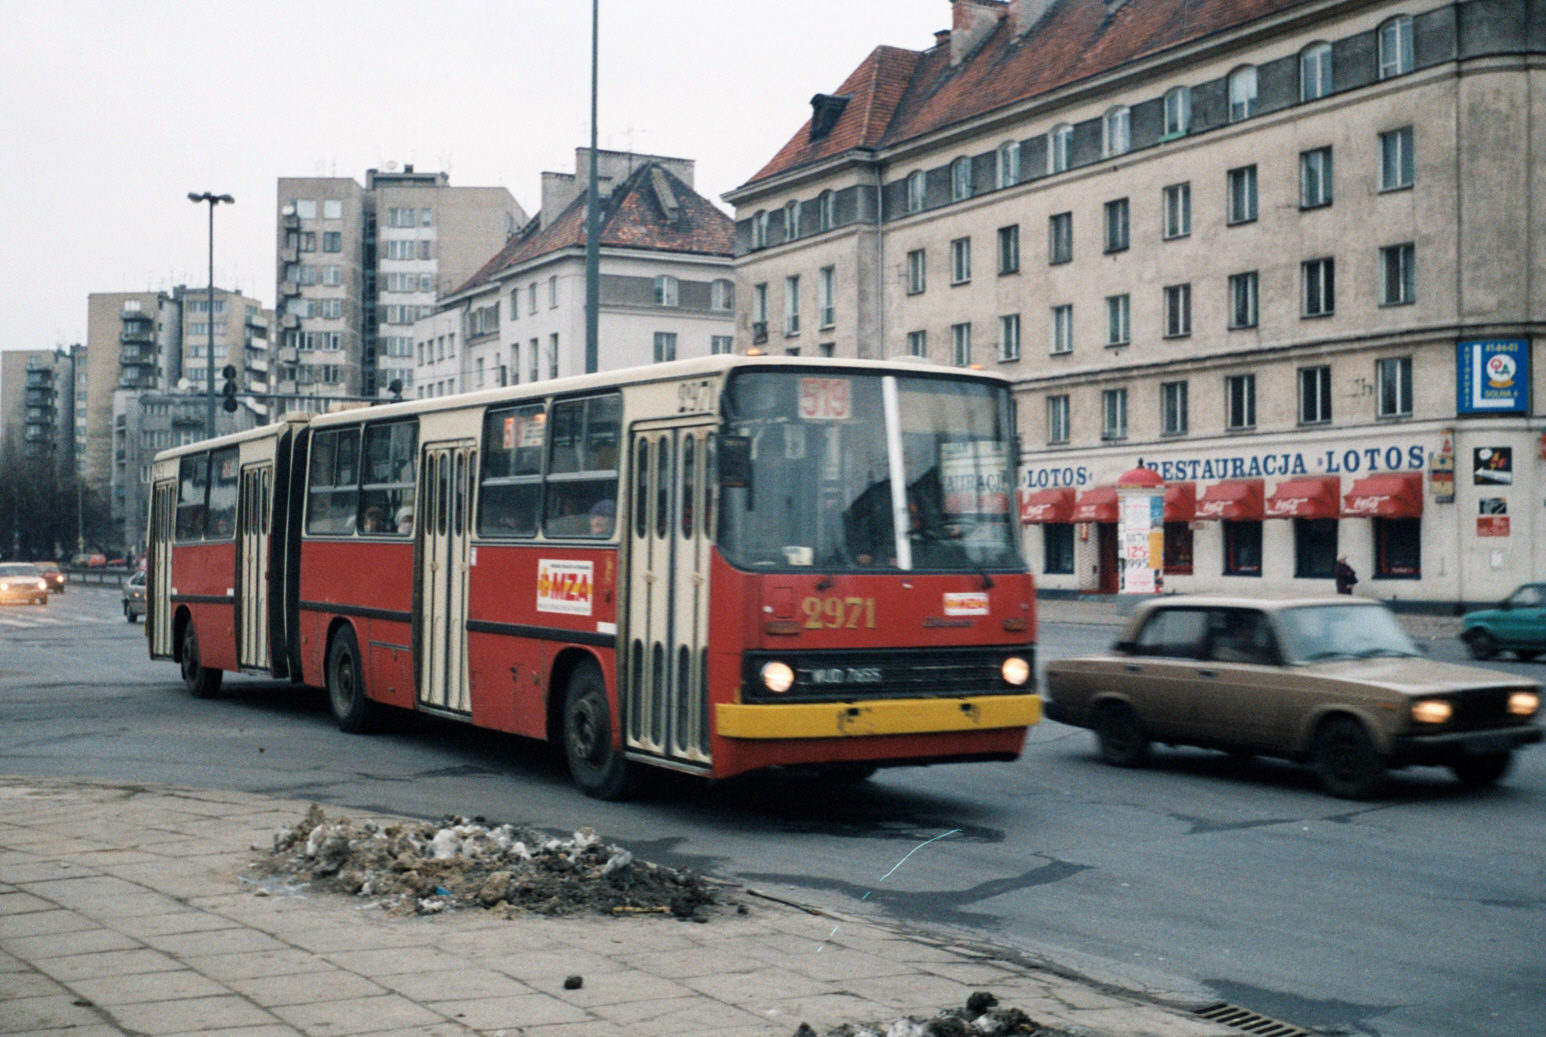 2971
Ikarus 280, produkcja 1990, druga obsada numeru 2971.
Za dwa lata wóz trafi na naprawę główną.

Foto: P.B. Jezierski
Słowa kluczowe: 2971